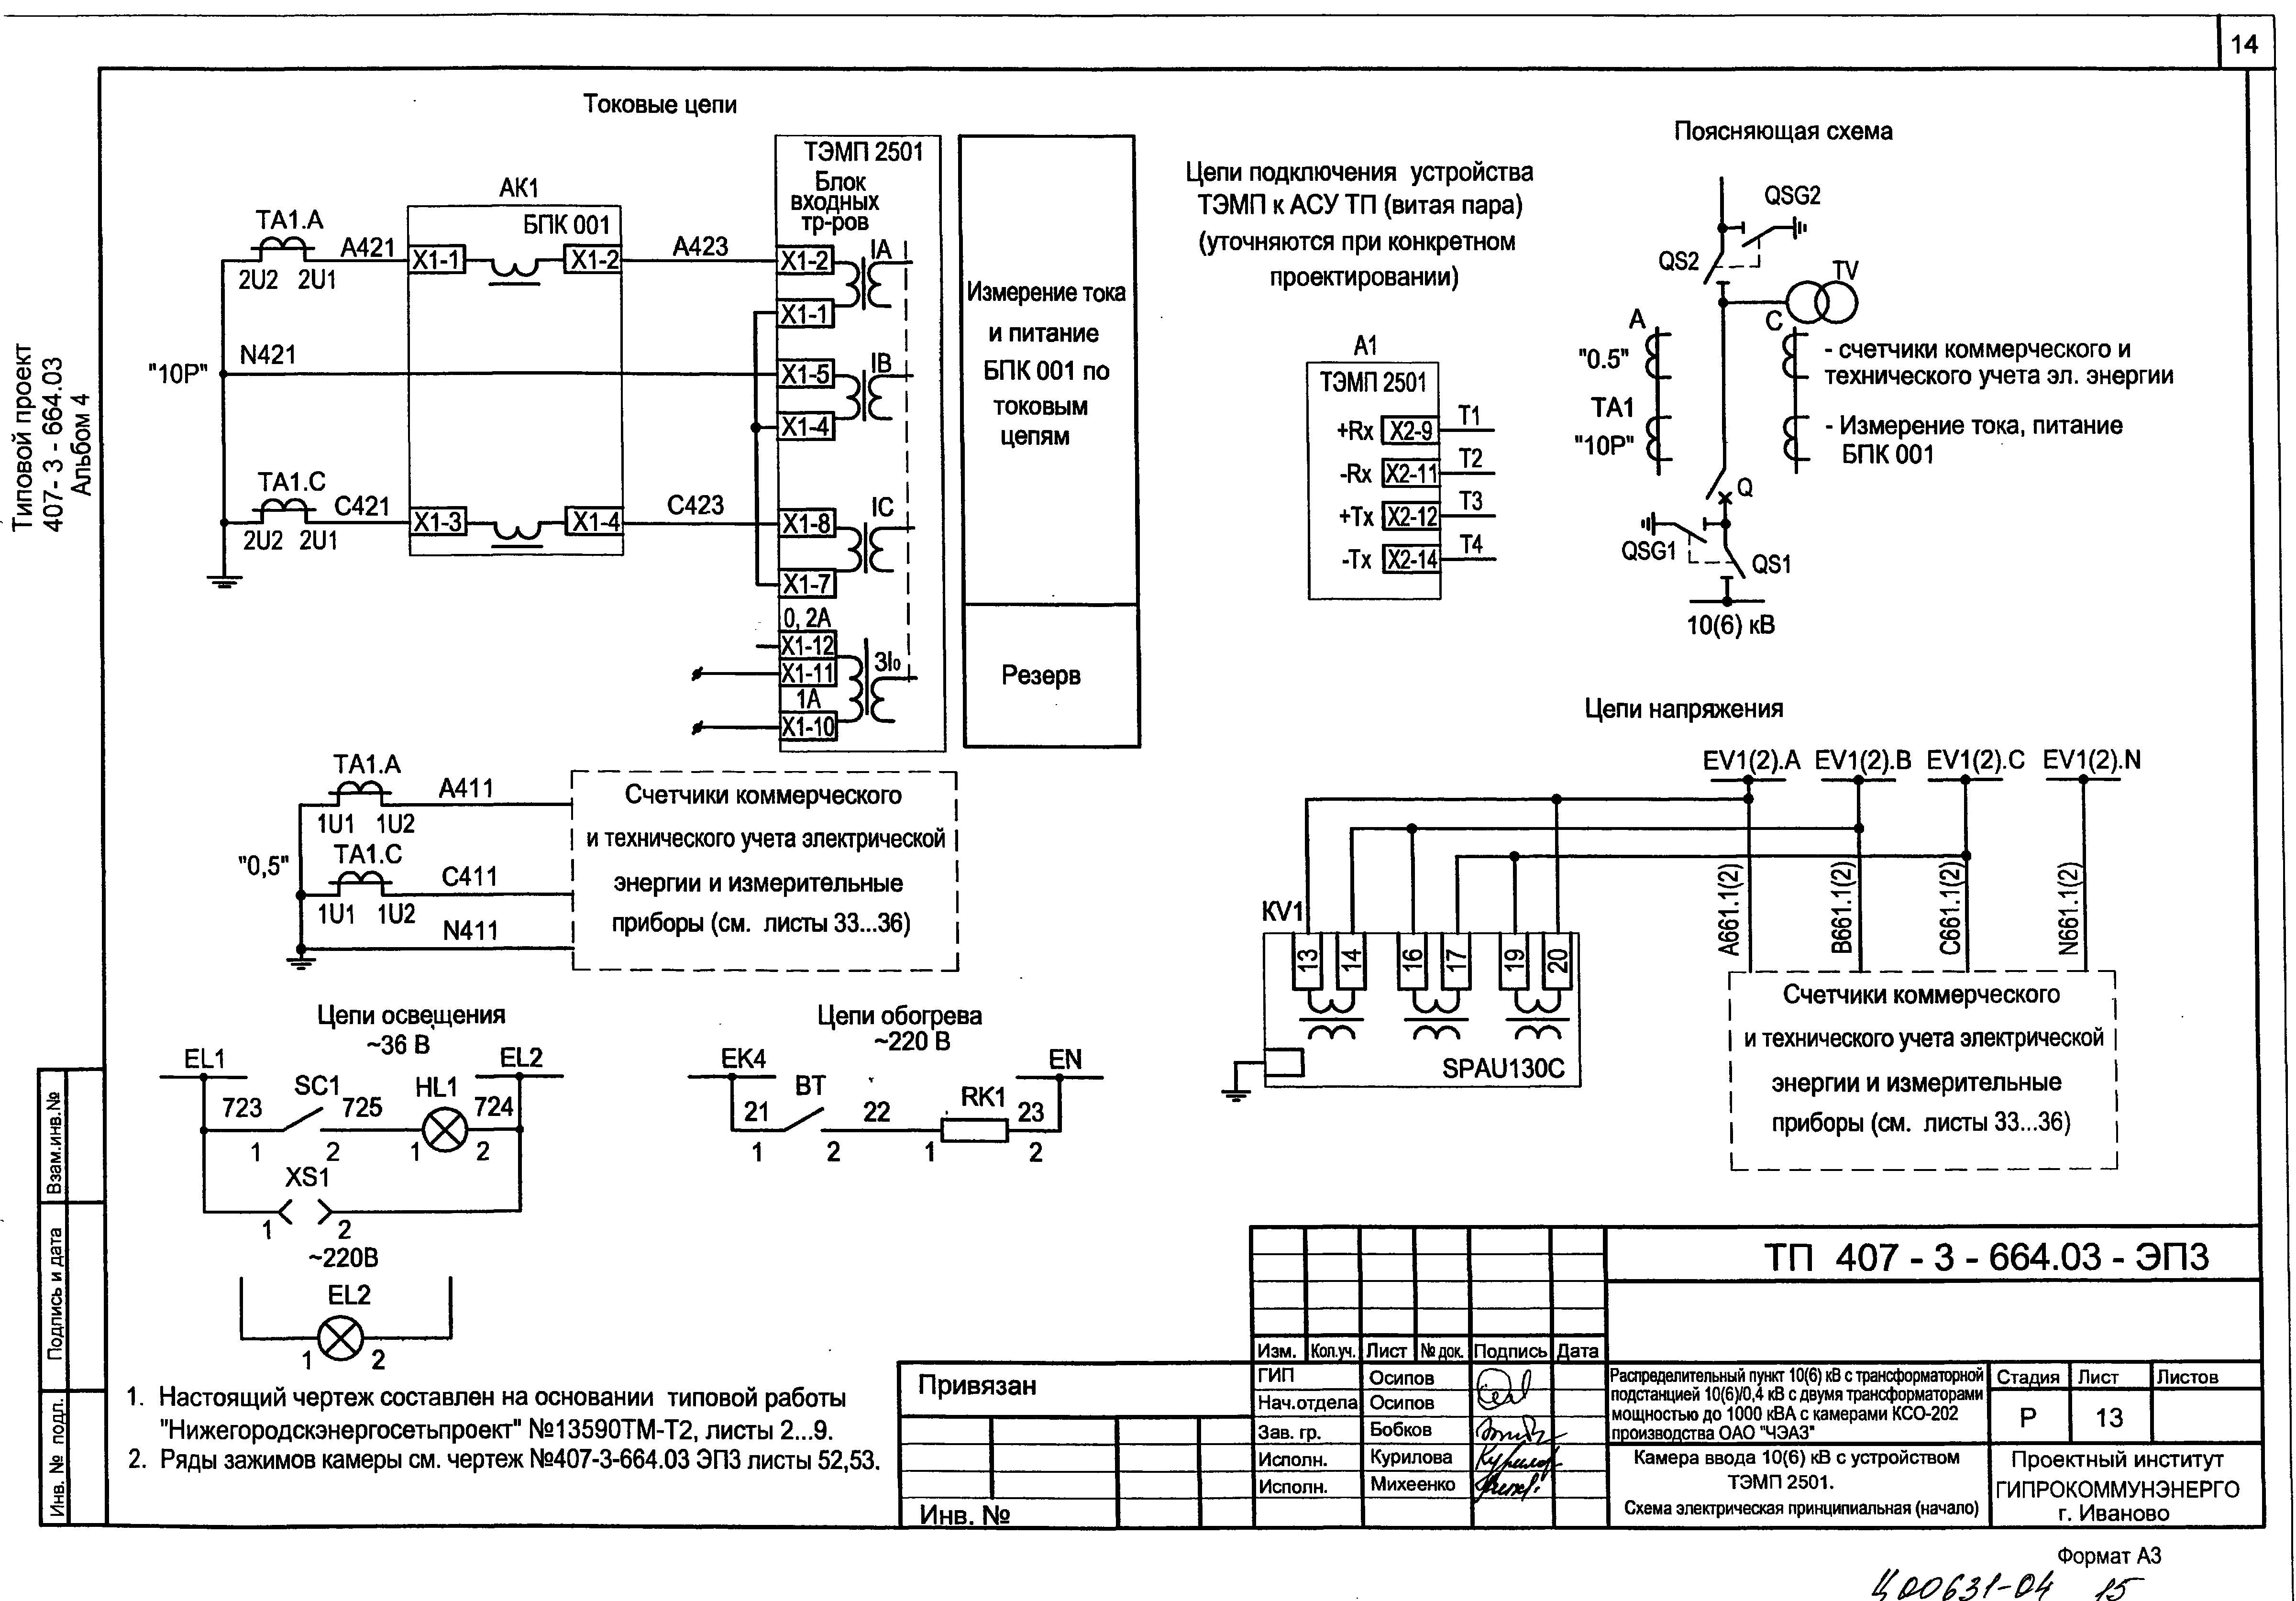 Схема подключения шкафа учета электроэнергии